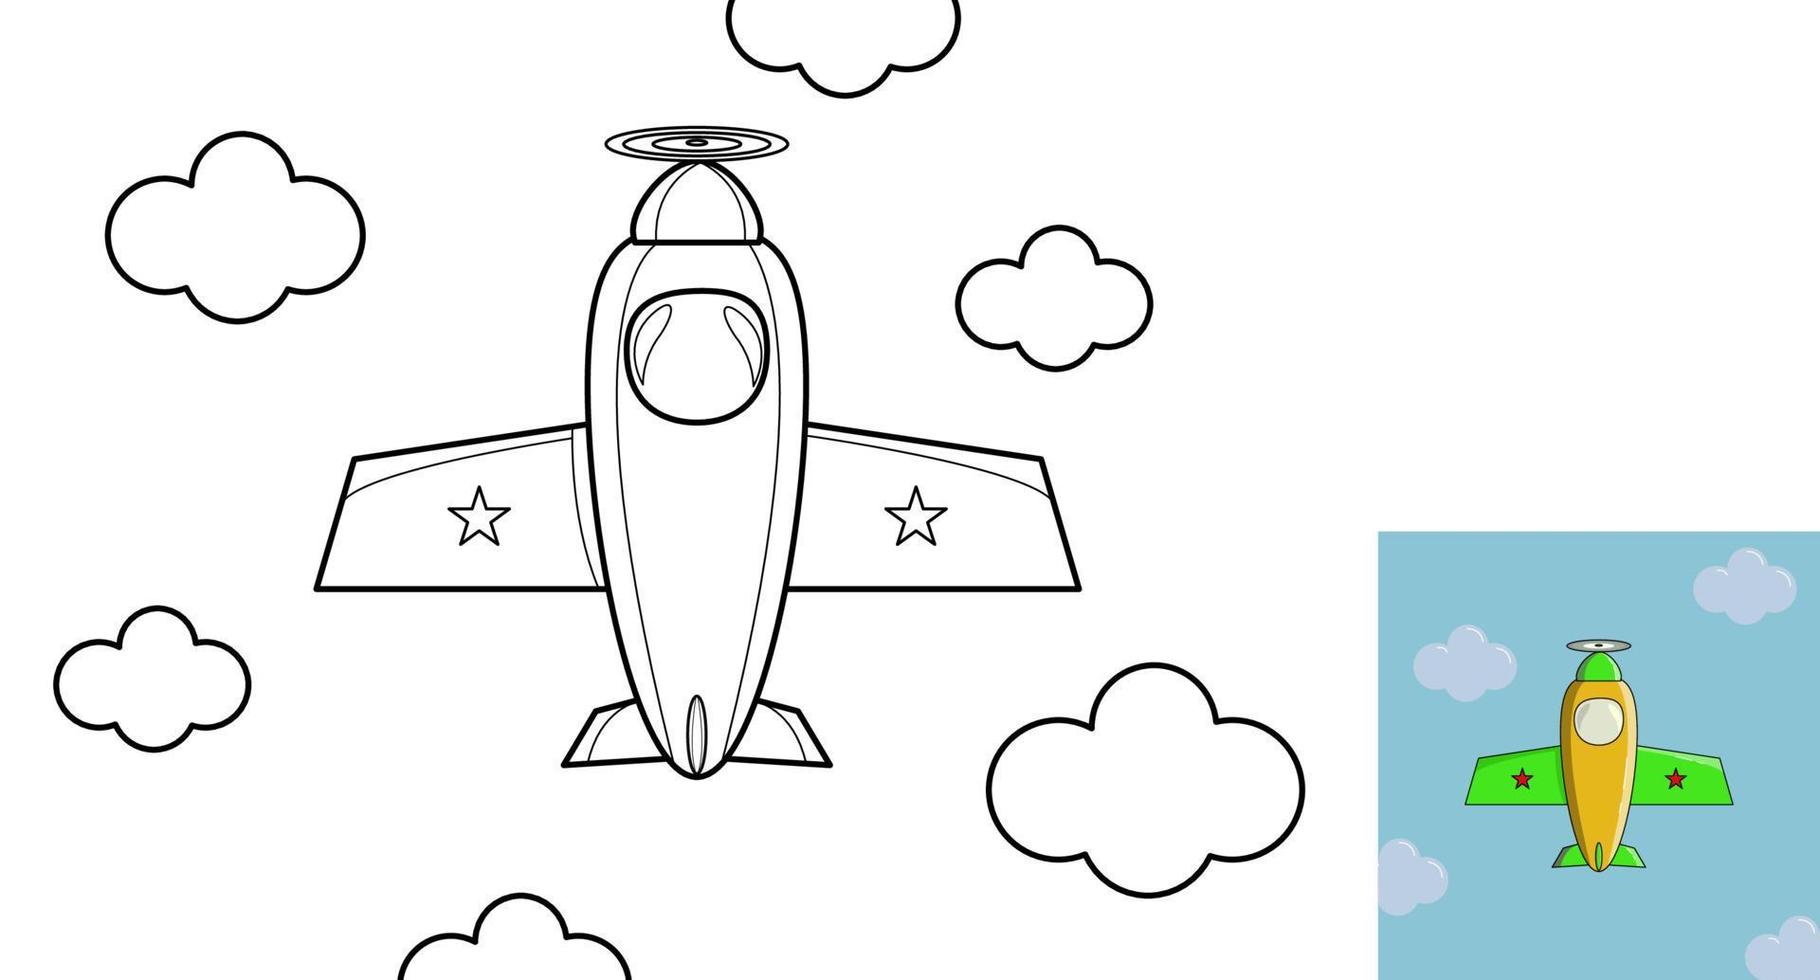 målarbok. tecknade flygplan för barn aktivitet målarbok. vektor illustration